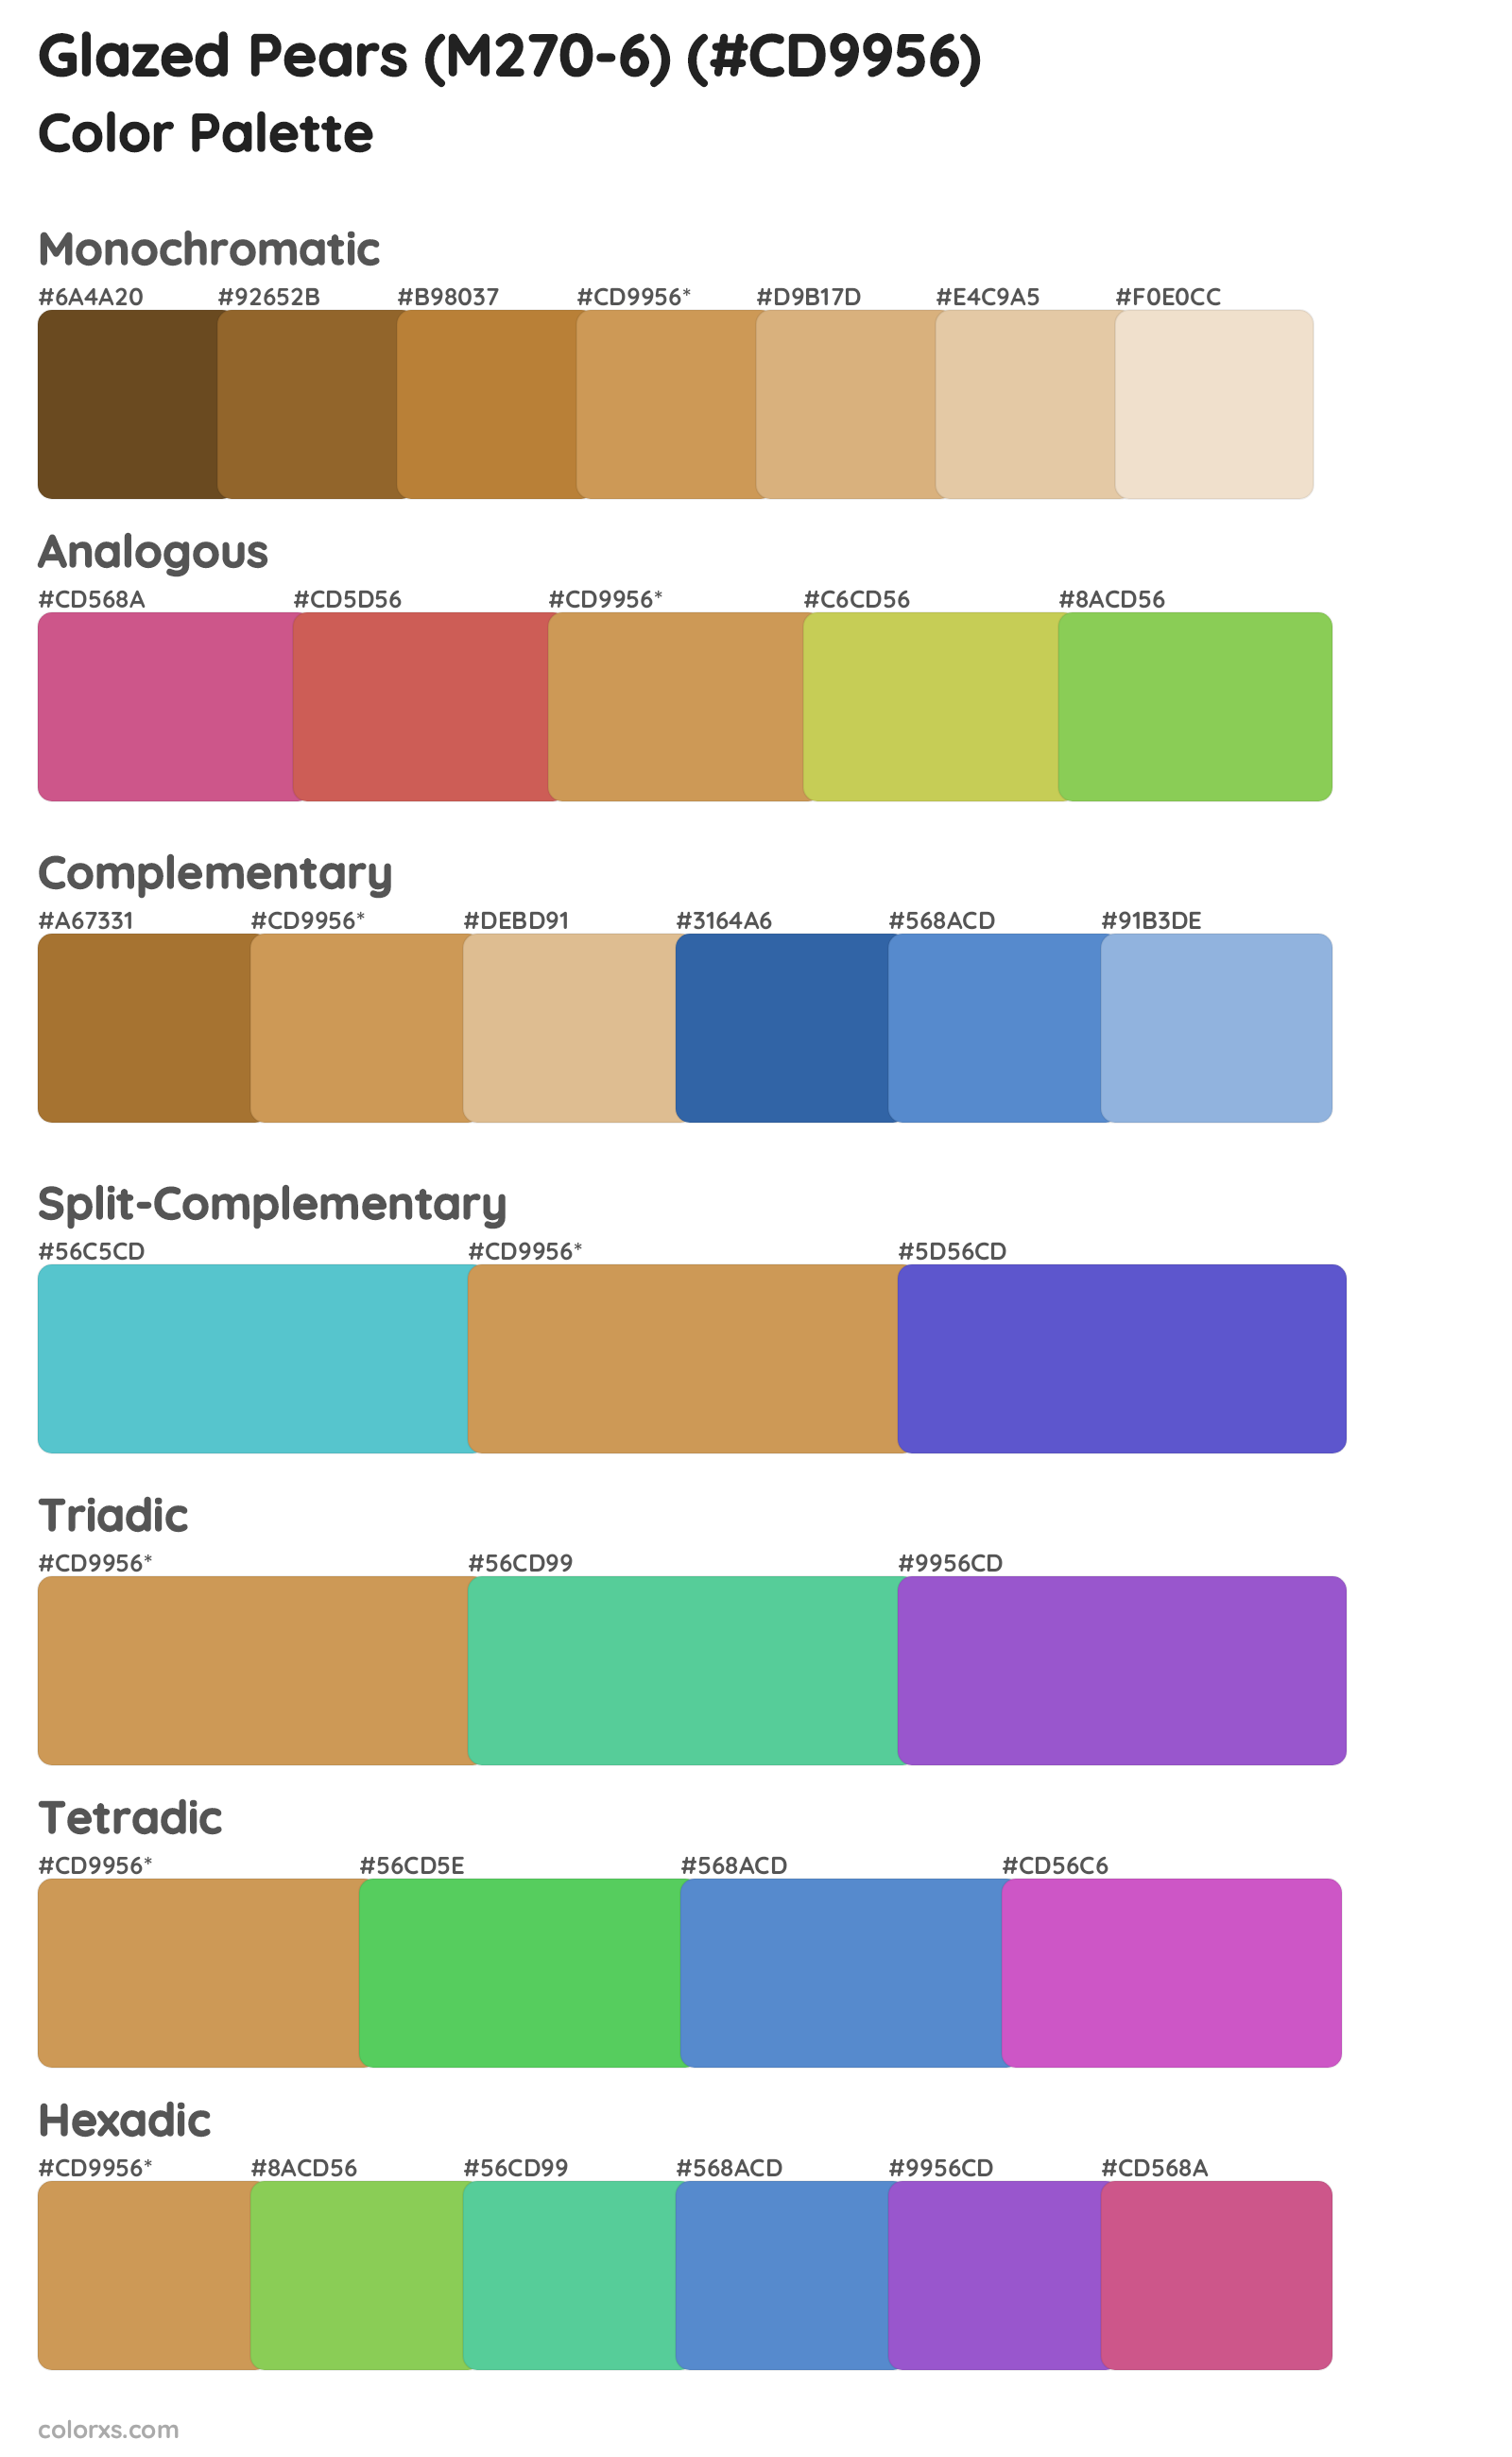 Glazed Pears (M270-6) Color Scheme Palettes